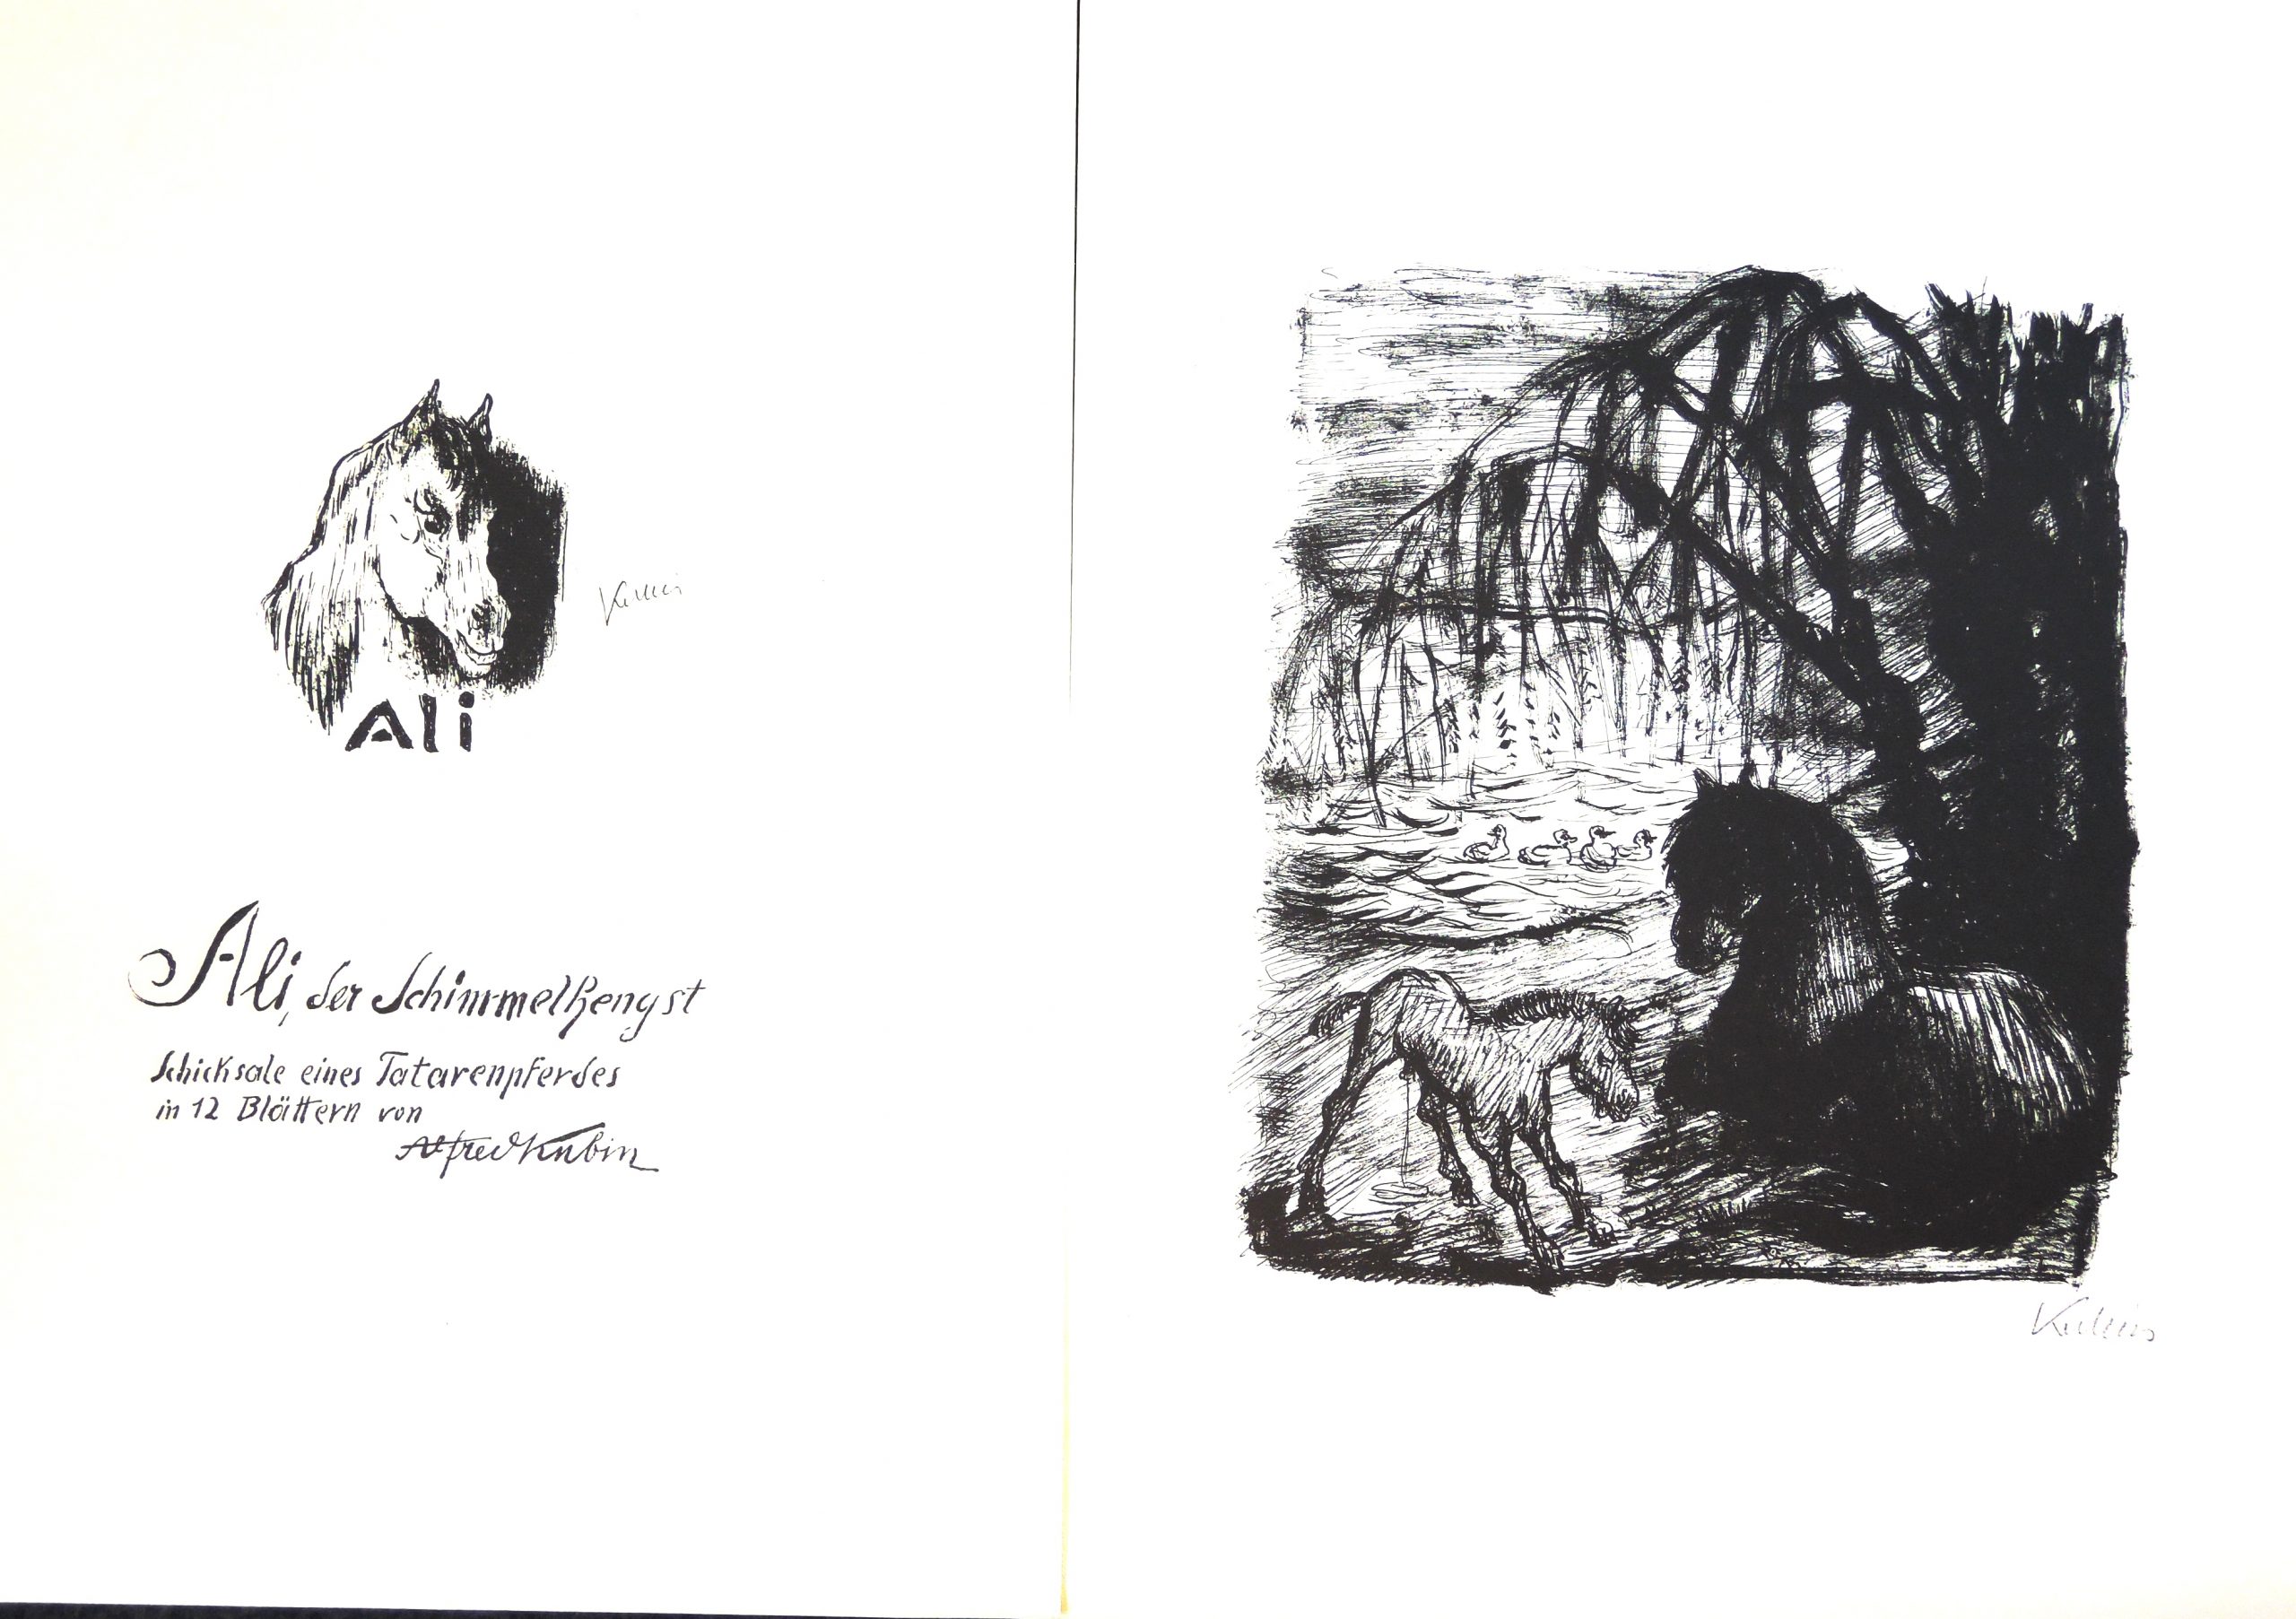 Alfred Kubin, Ali, der Schimmelhengst – Schicksale eines Tatarenpferdes in 12 Blättern